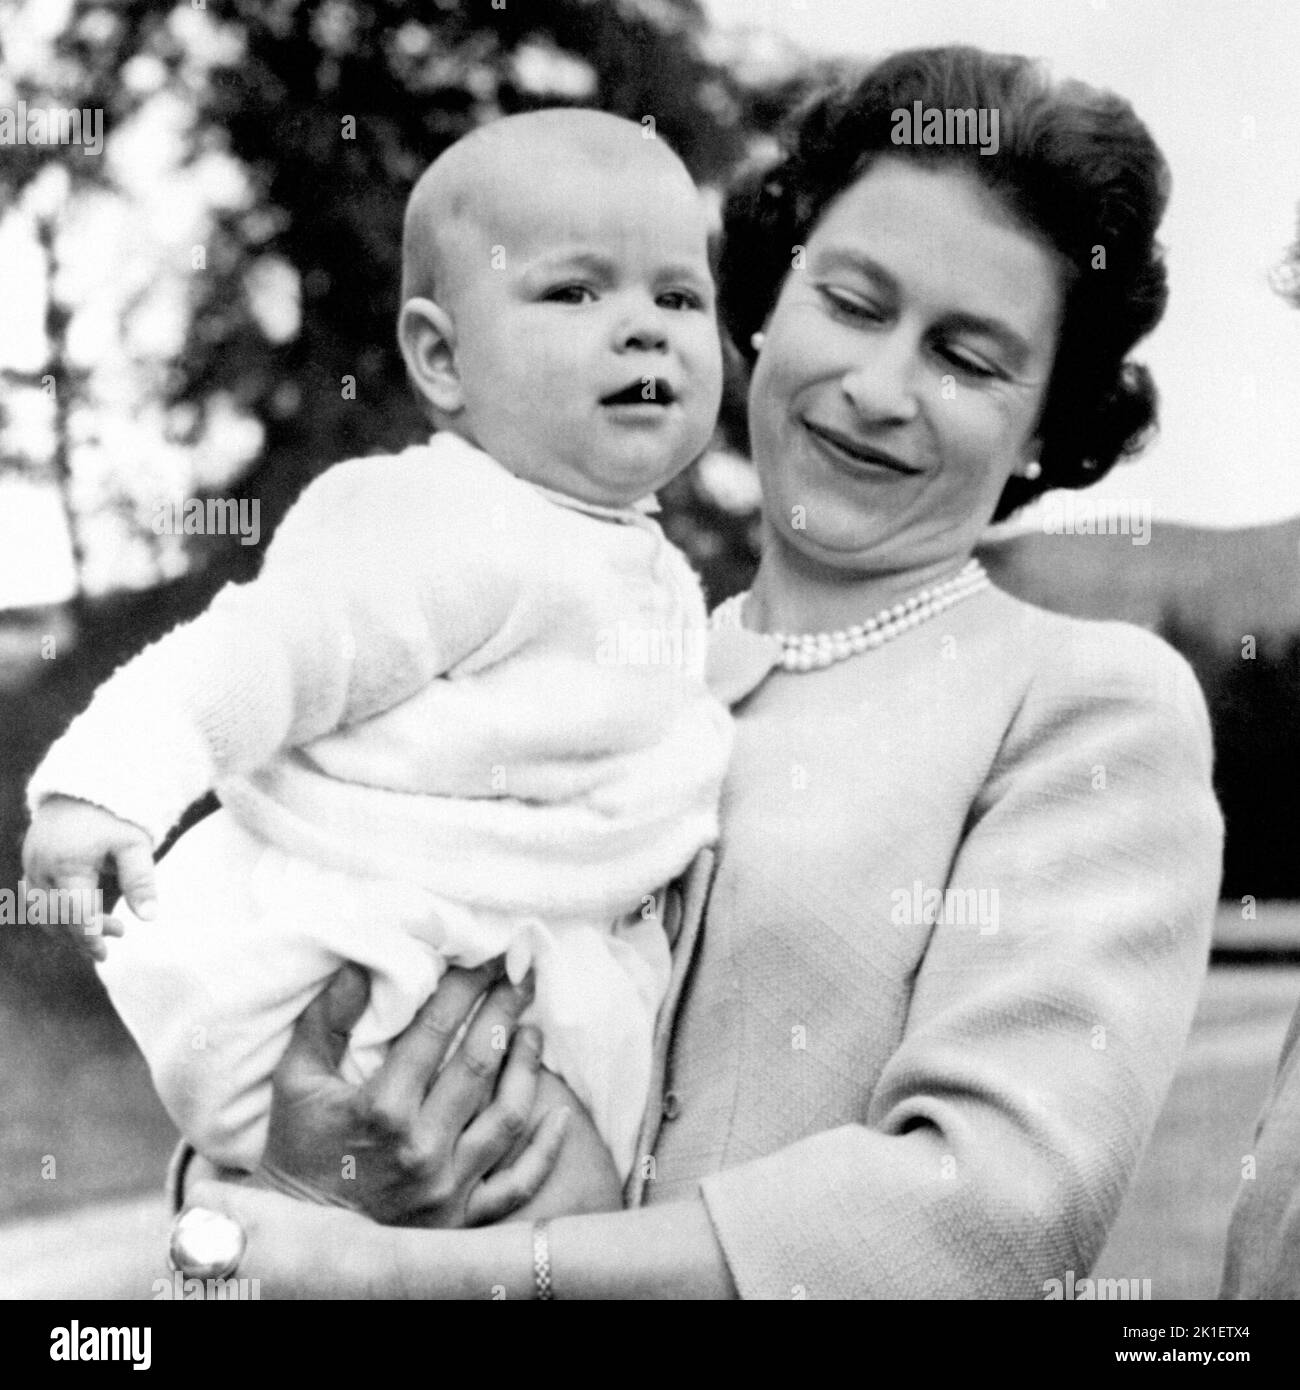 Aktenfoto vom 08/11/60 von Königin Elizabeth II., die Prinz Andrew während eines Ausflugs in das Gelände von Balmoral, Schottland, hielt. Er war das erste Kind, das 103 Jahre lang von einem regierenden Monarchen geboren wurde. Ausgabedatum: Sonntag, 18. September 2022.. Bildnachweis sollte lauten: PA Wire Stockfoto